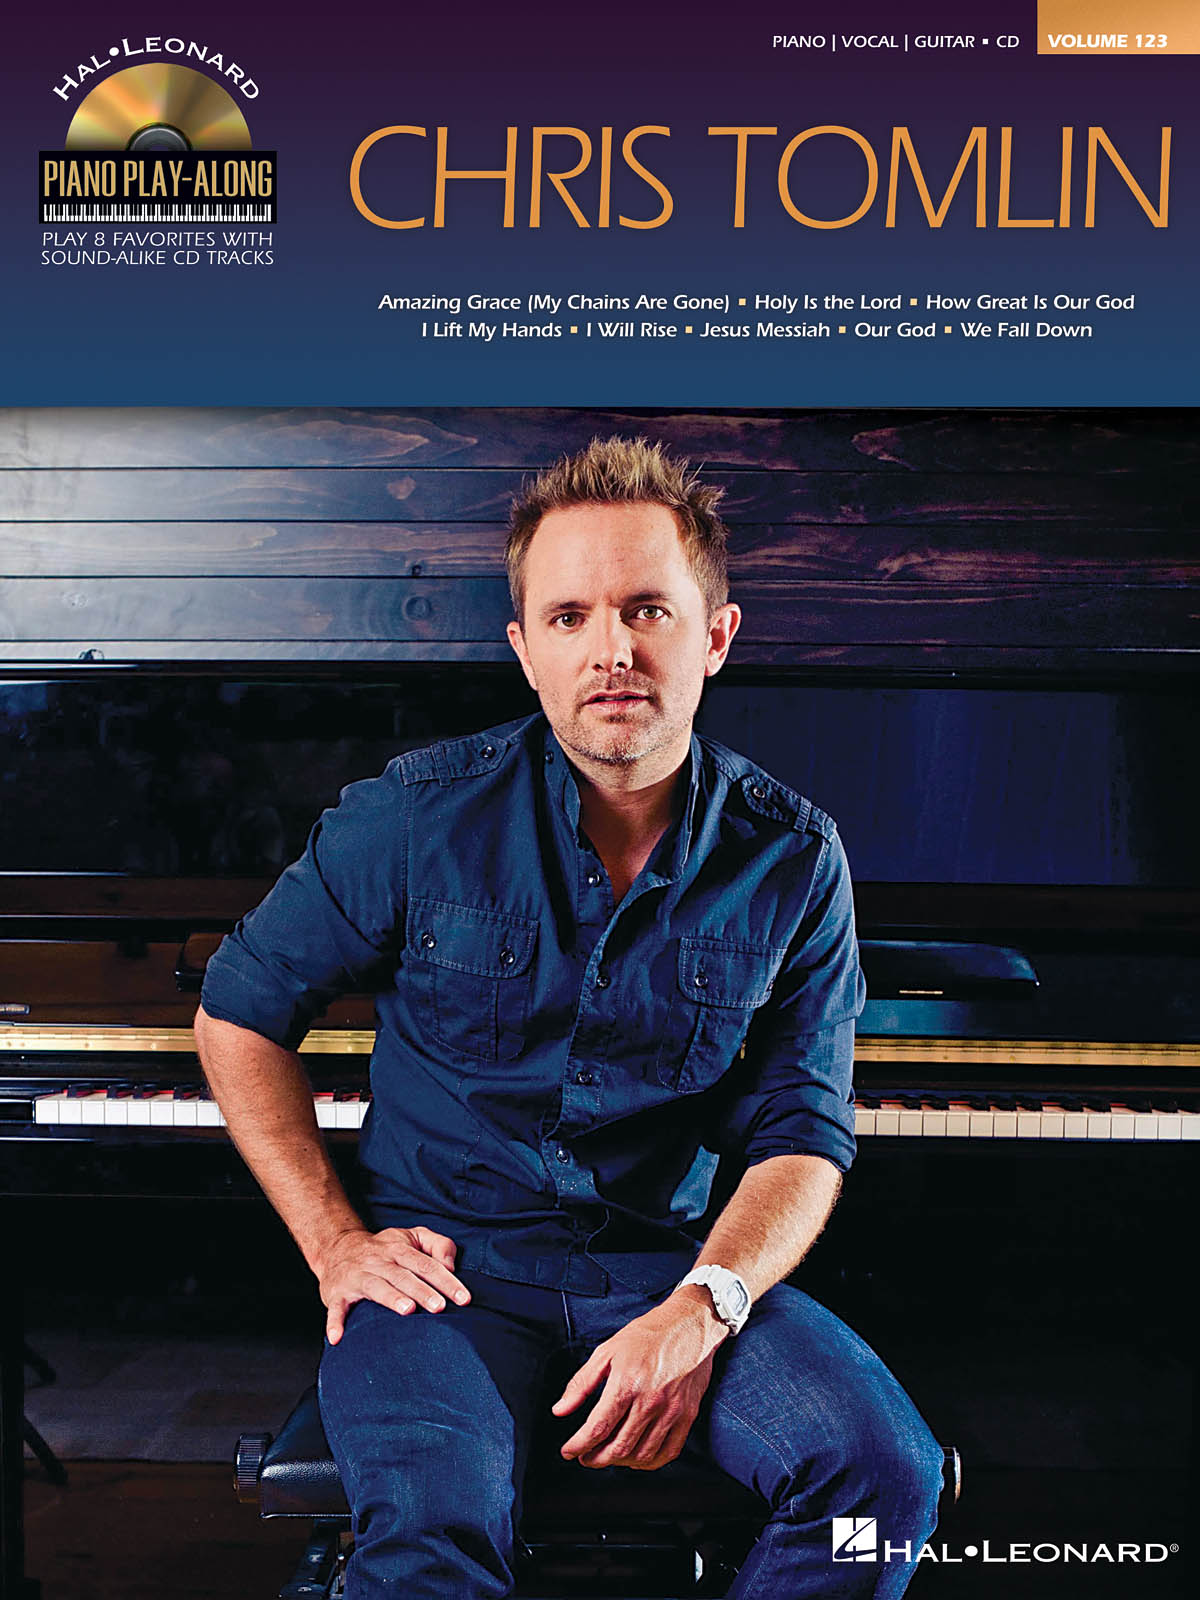 Chris Tomlin - Piano Play-Along Volume 123 známé písně pro klavír